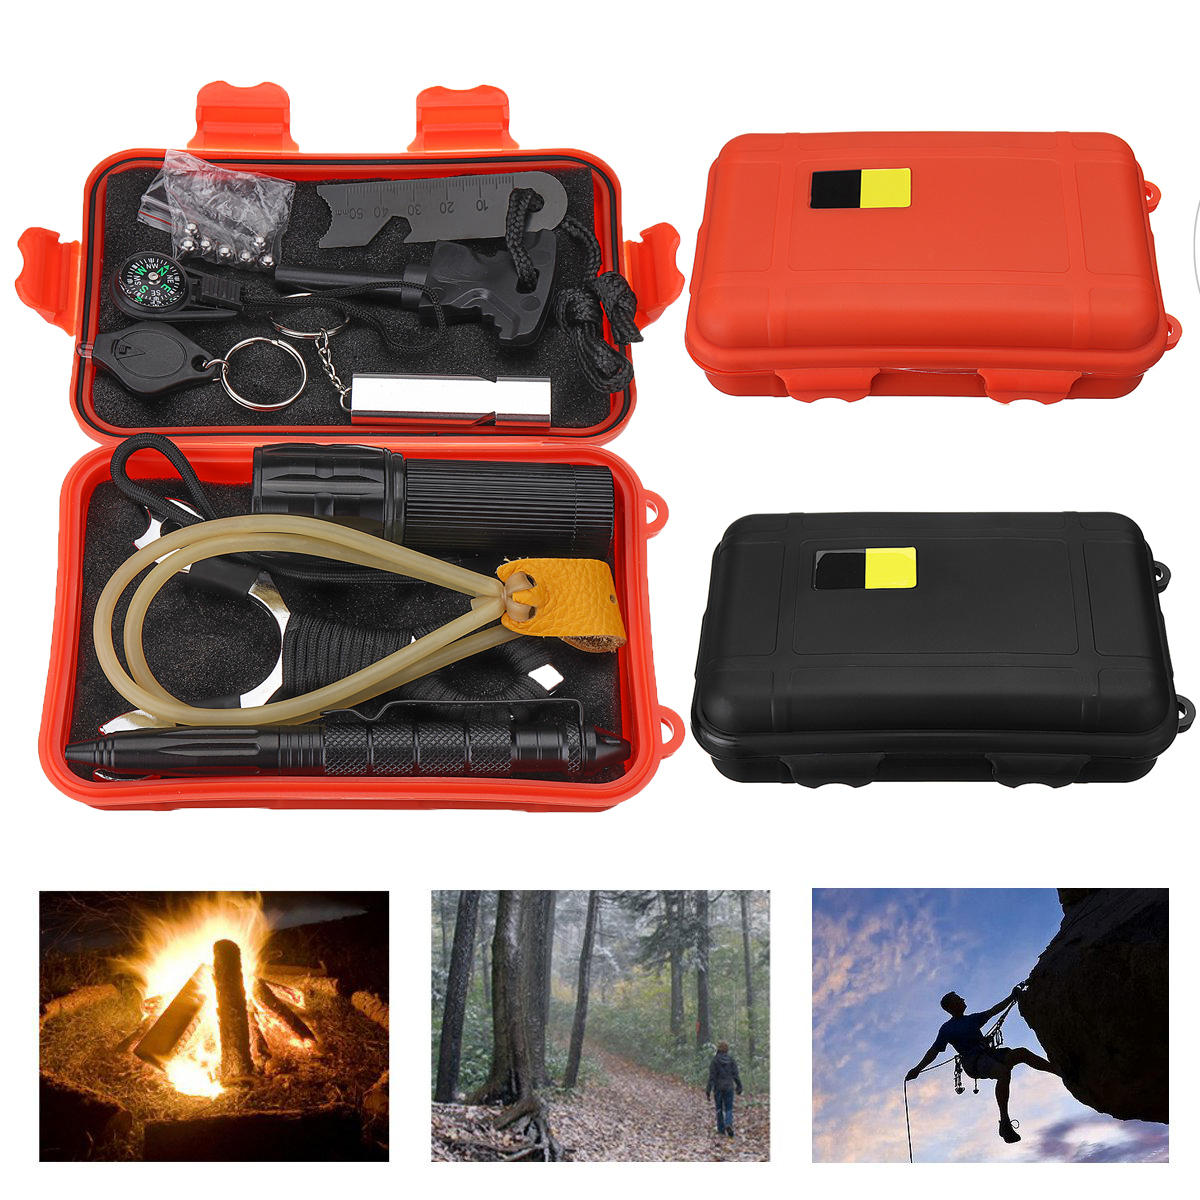 Caixa de ferramentas de sobrevivência EDC 7 em 1 para exteriores SOS Emergency Multifunctional Kits Box para acampar e caminhar